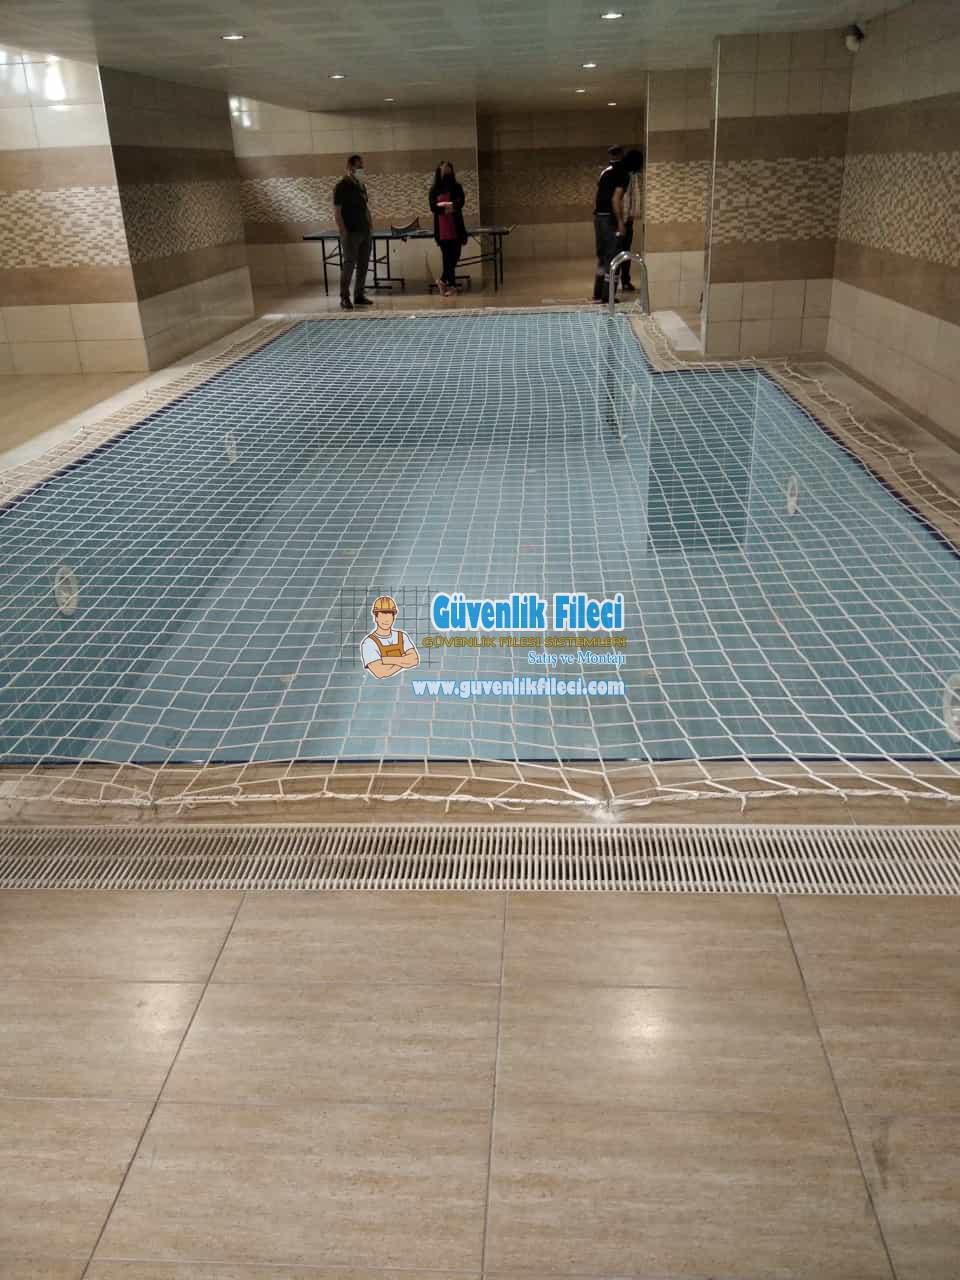 Ankara Yenimahalle KAZAN YASSIÖREN MAH. Havuz Güvenlik Filesi Projesi Devam Ediyor.